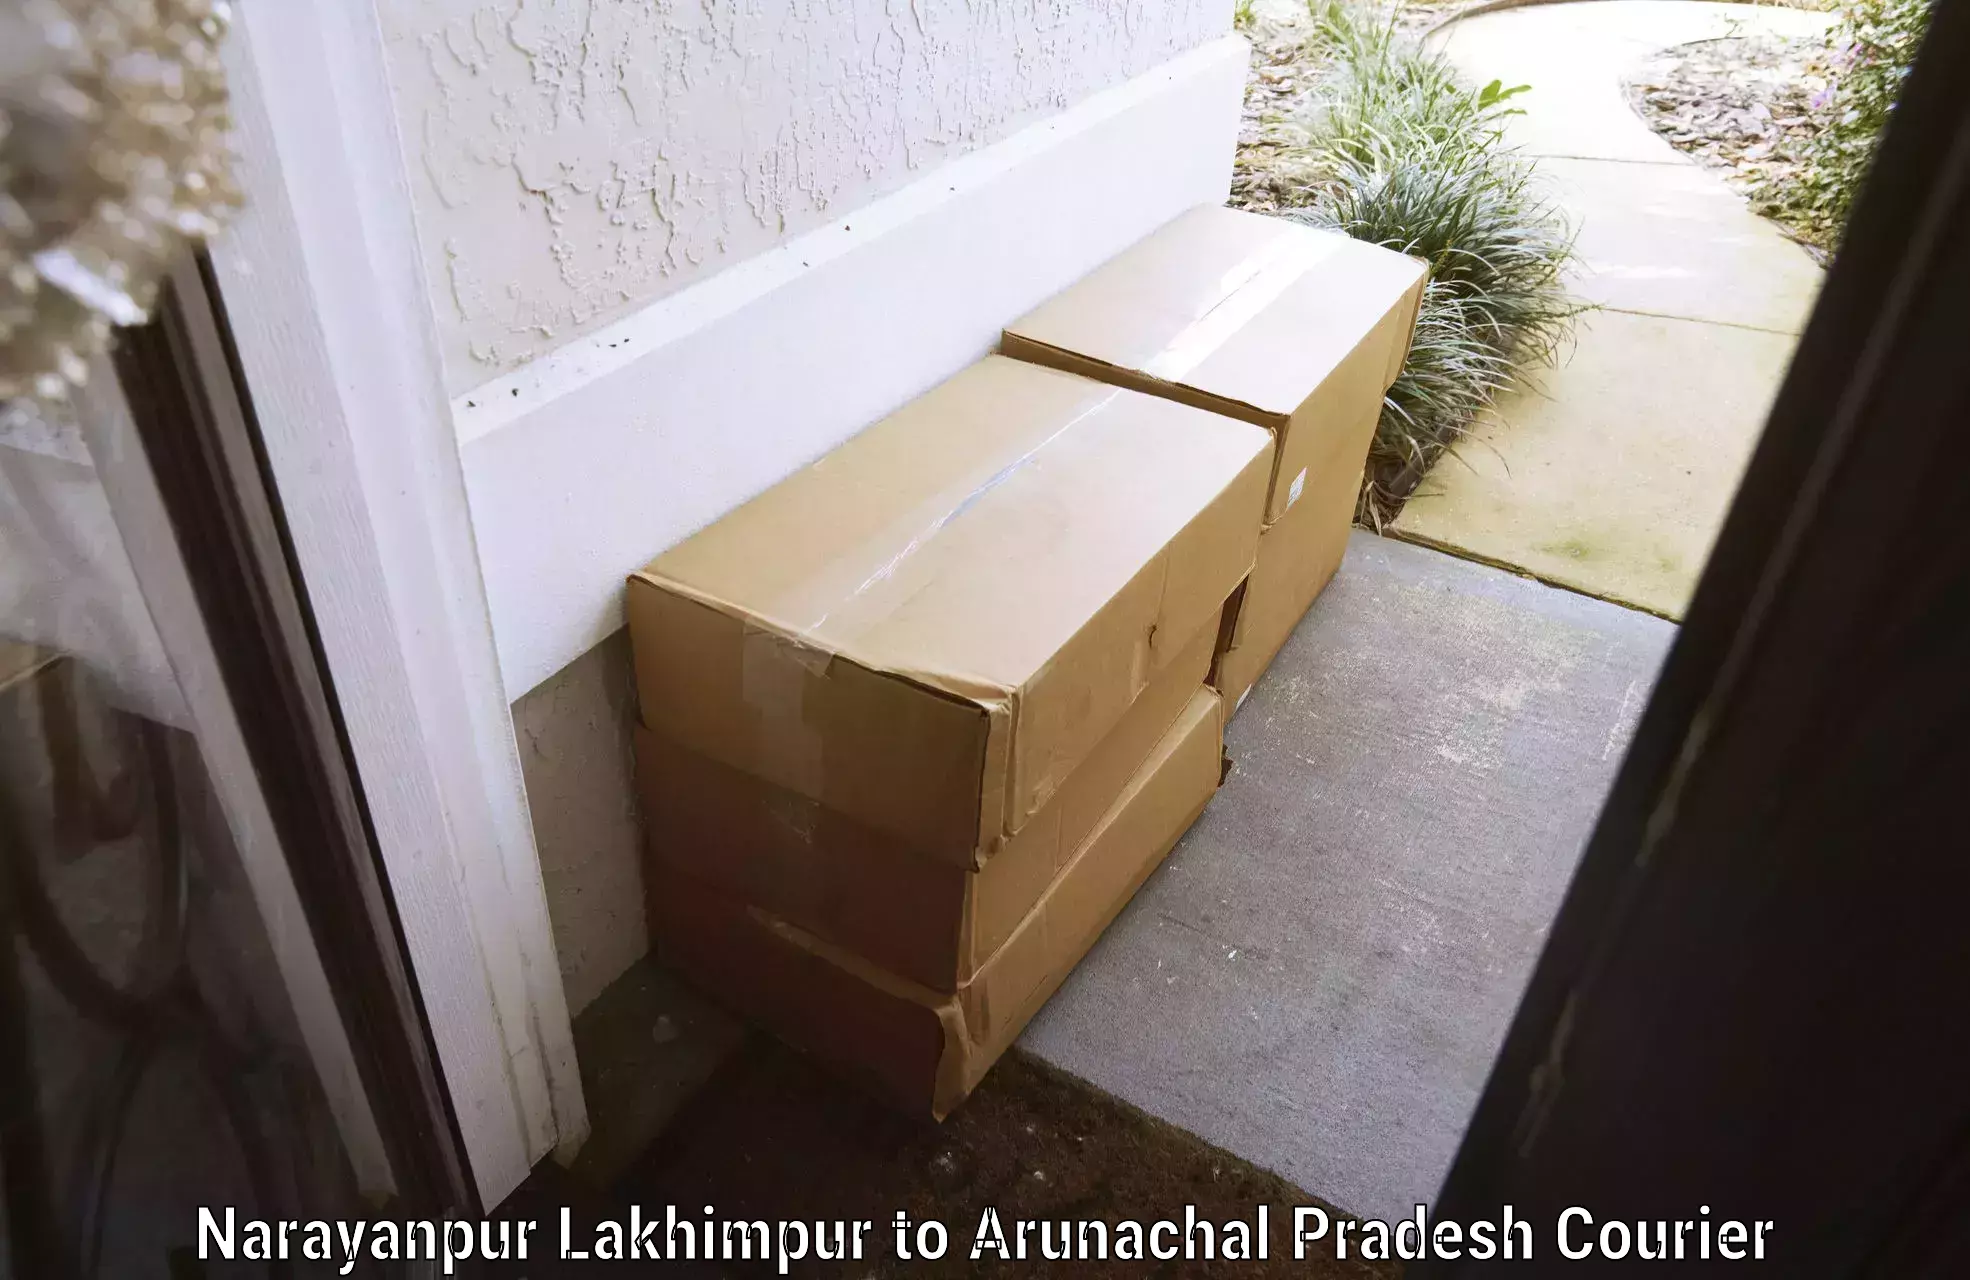 Baggage courier strategy Narayanpur Lakhimpur to Arunachal Pradesh